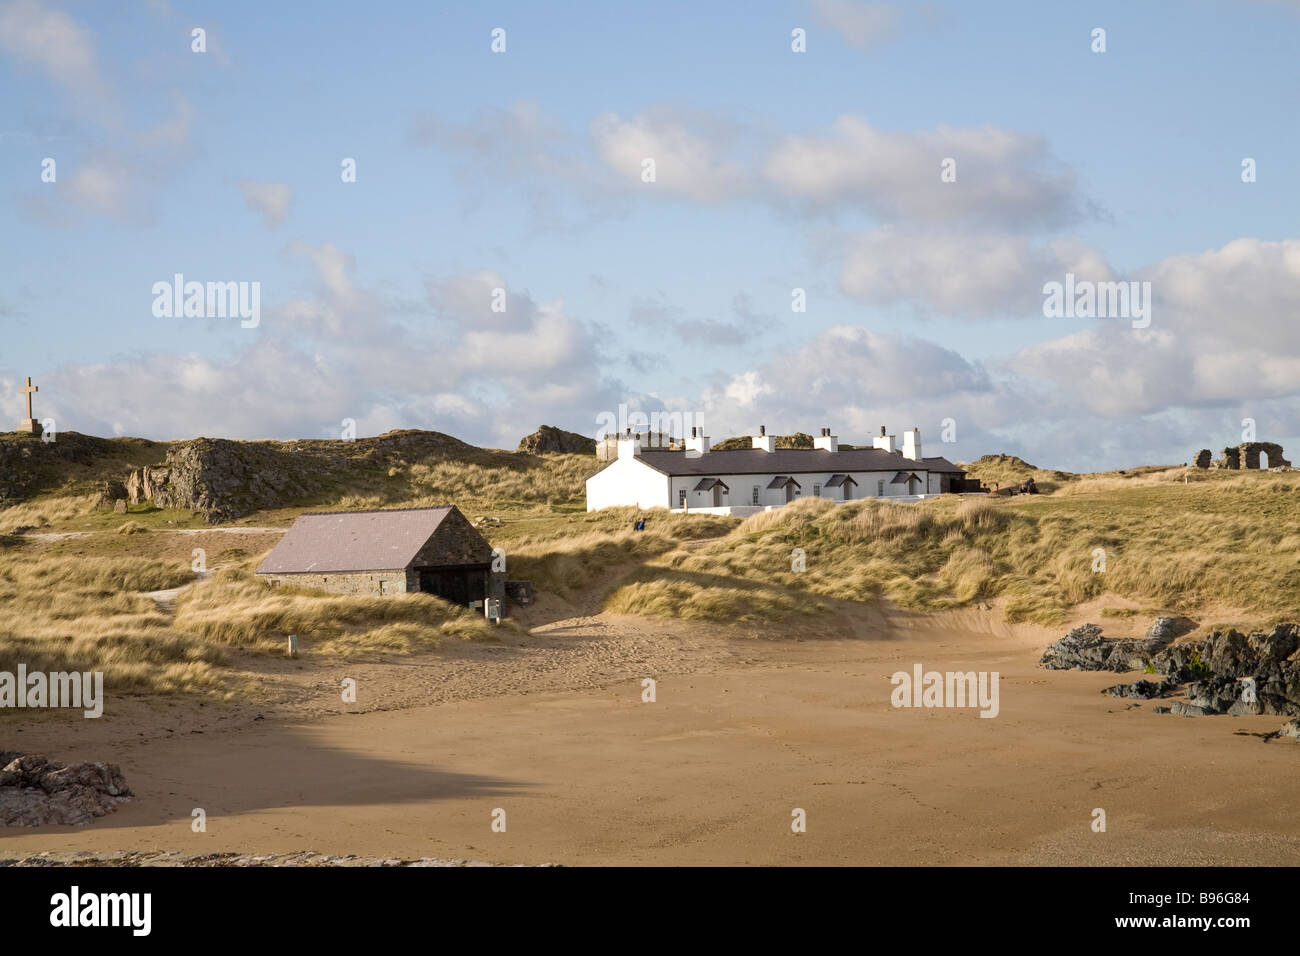 Llanddwyn Insel Isle of Anglesey North Wales März Blick auf Welterbestätten auf der historischen Insel Stockfoto